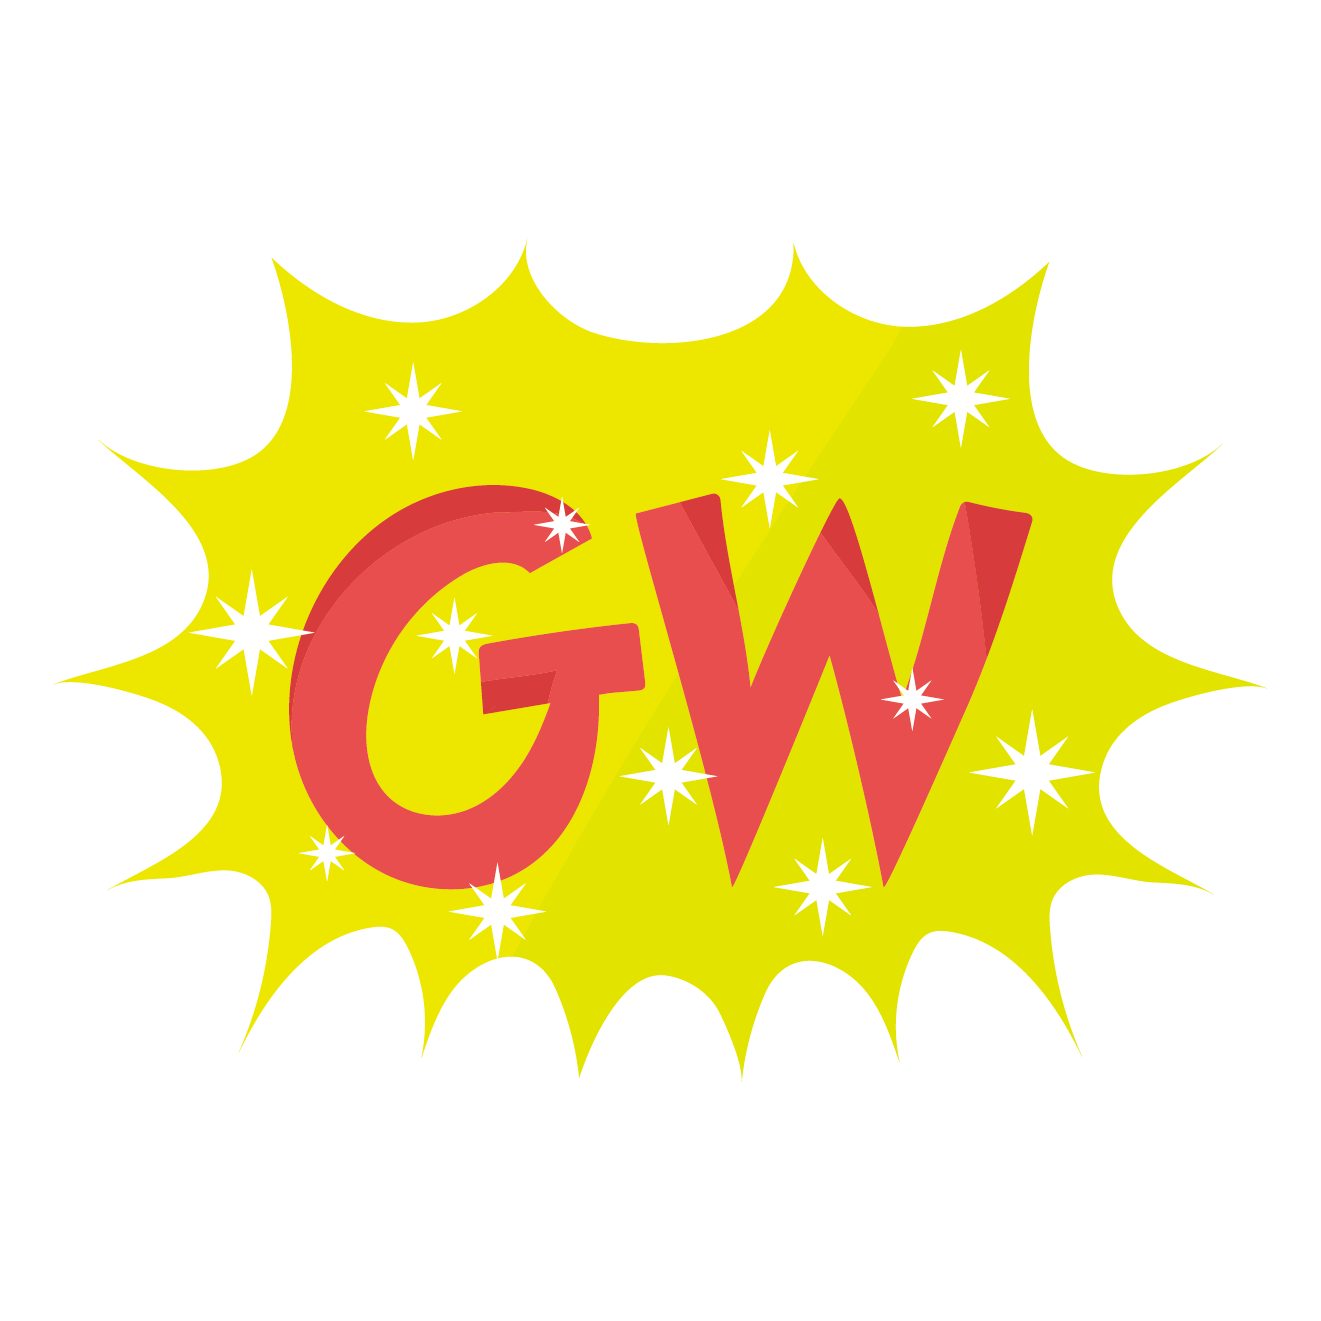 Gw ゴールデンウィークの文字 ロゴ マーク イラスト 商用フリー 無料 のイラスト素材なら イラストマンション